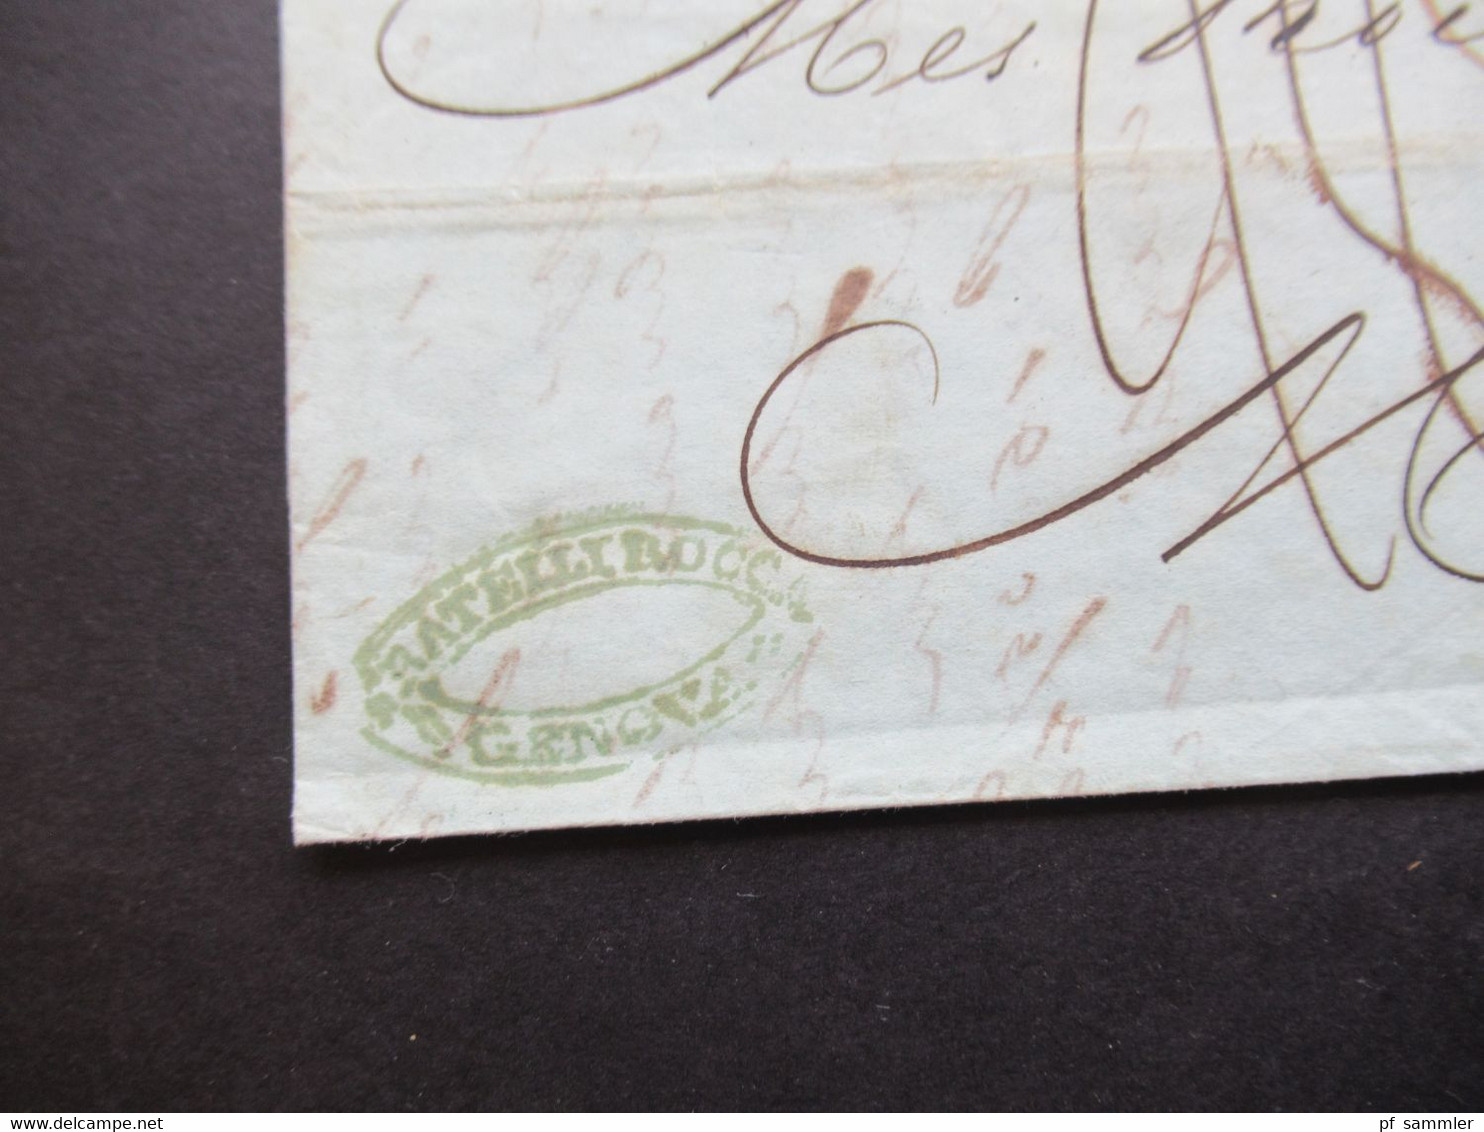 1852 Faltbrief Inhalt Bartaxe Auslandsbrief Genova - Marseille Handschriftlicher Vermerk Per Batteau Postale Francais - Sardinien